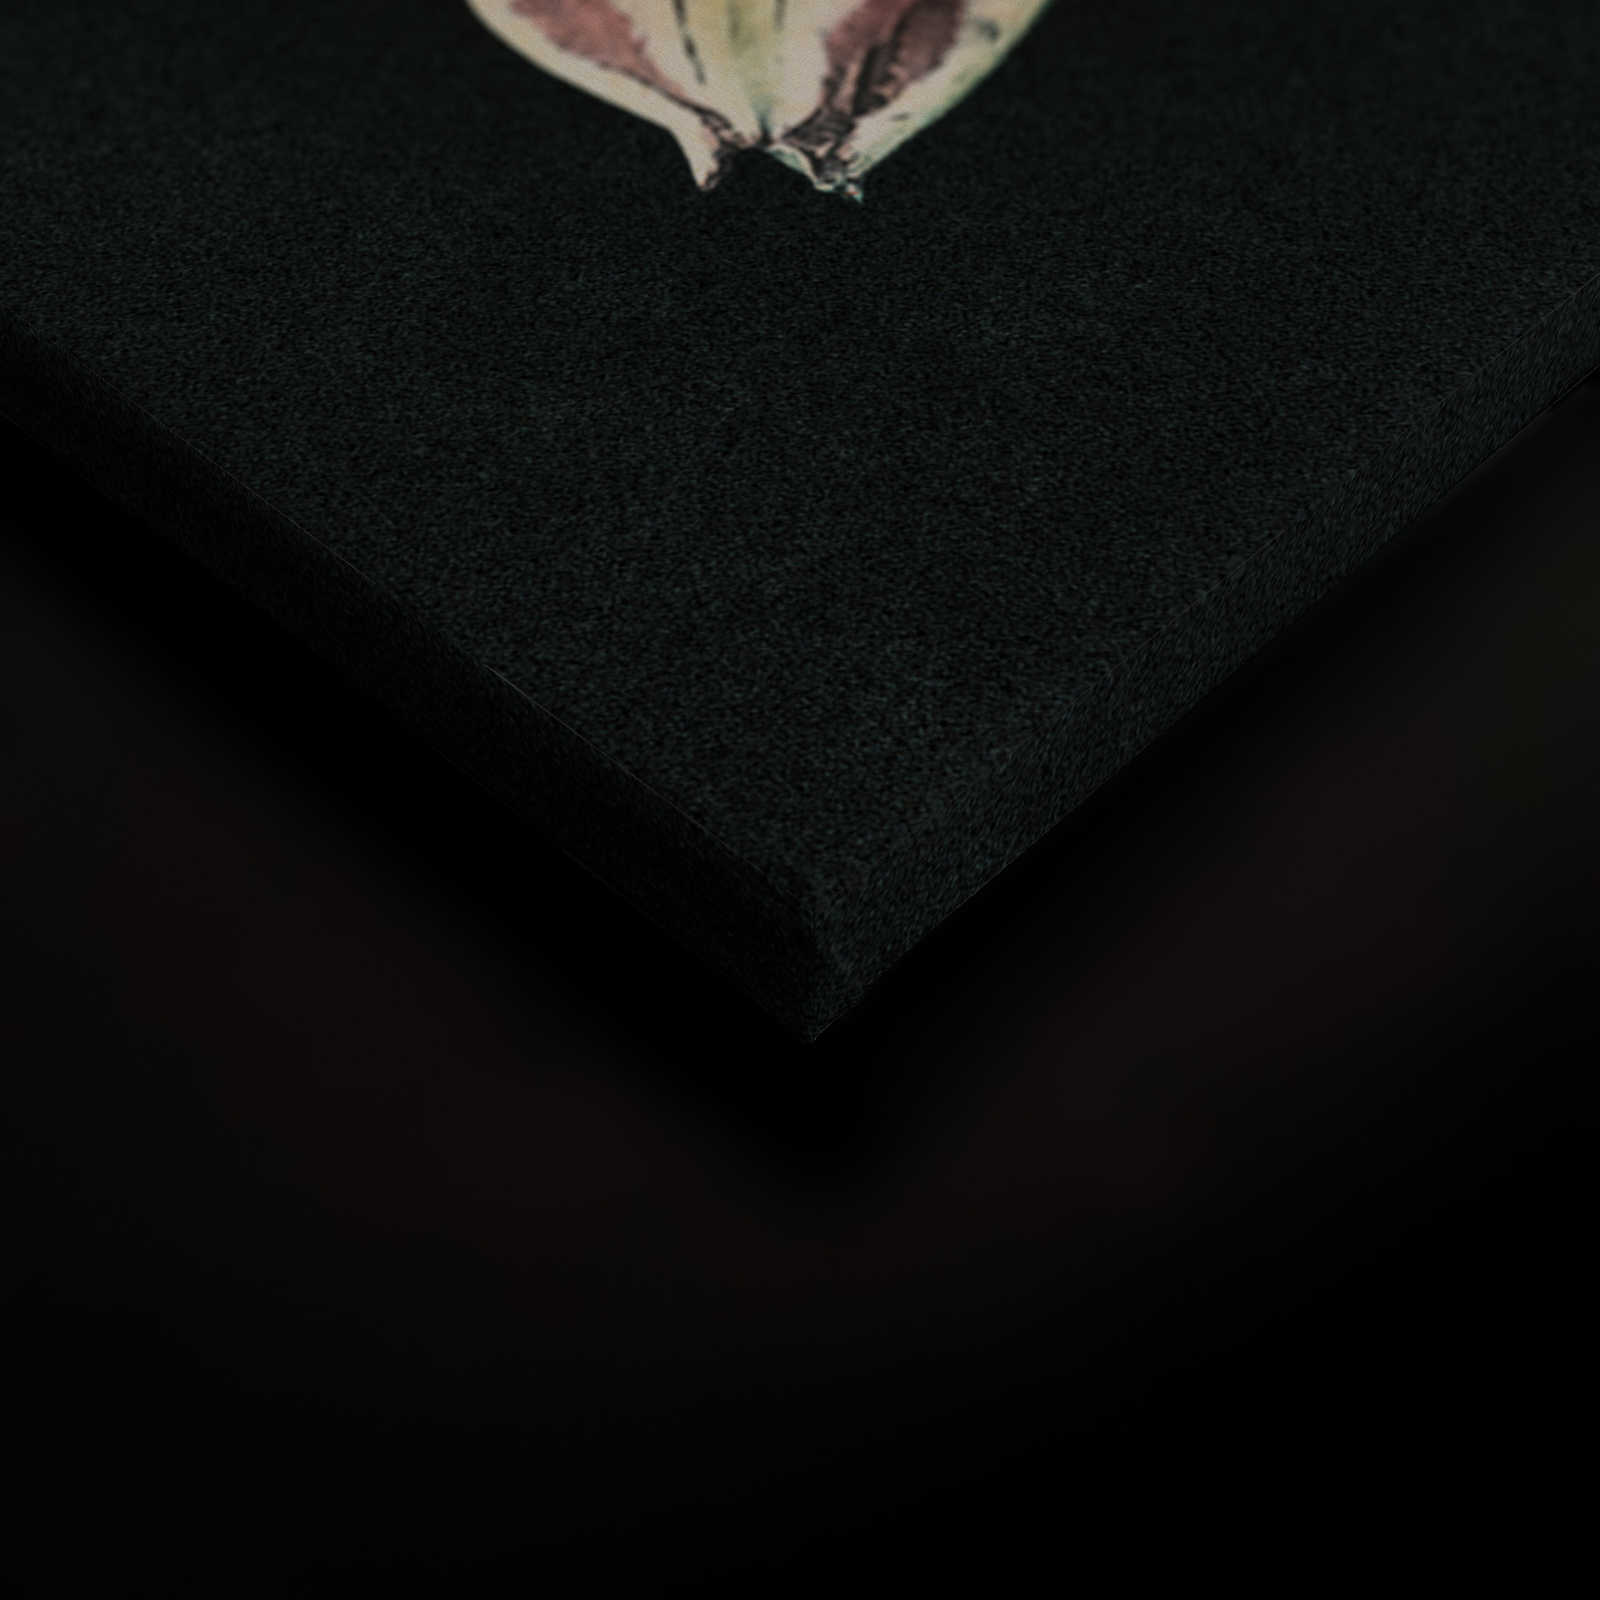             Drama queen 1 - Blumenstrauß Leinwandbild mit dunklem Hintergrund in Pappe Struktur – 0,90 m x 0,60 m
        